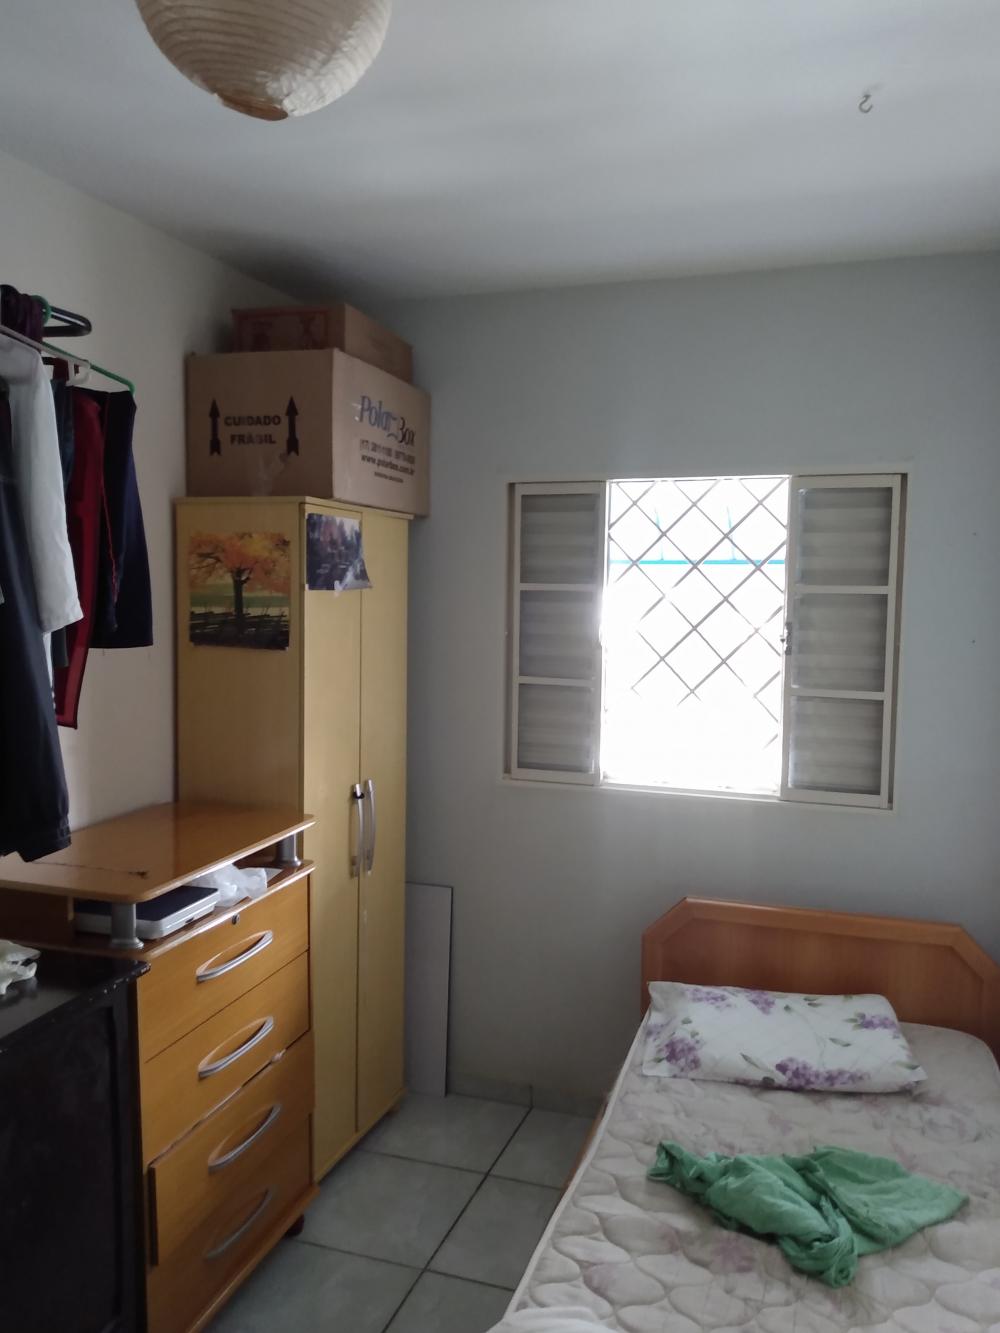 Alugar Casa / Padrão em São José do Rio Preto apenas R$ 850,00 - Foto 14